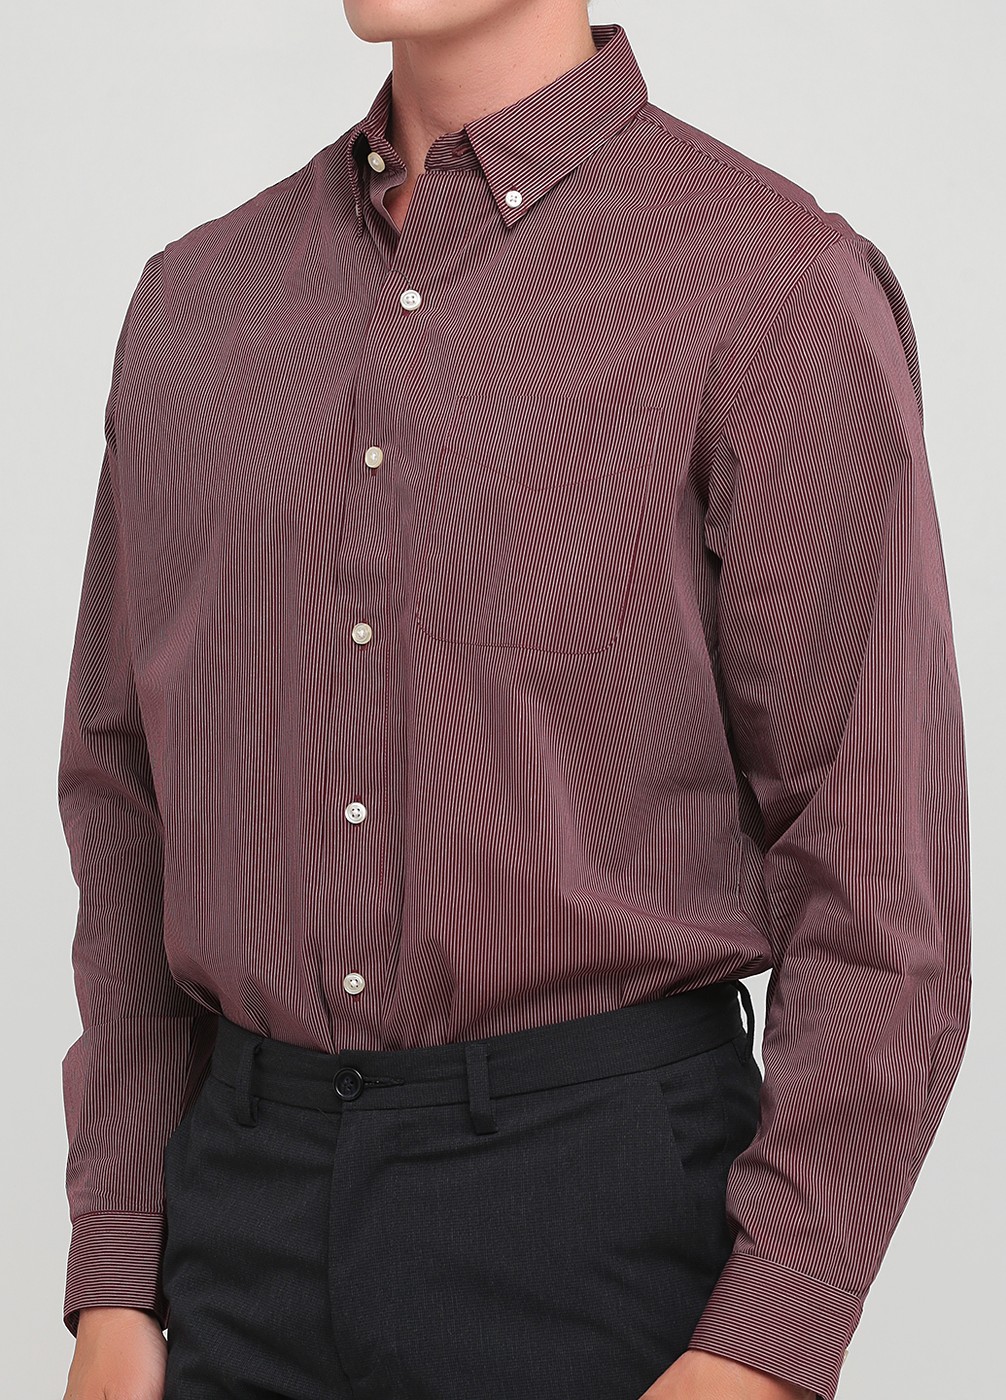 Мужская рубашка - рубашка Van Heusen